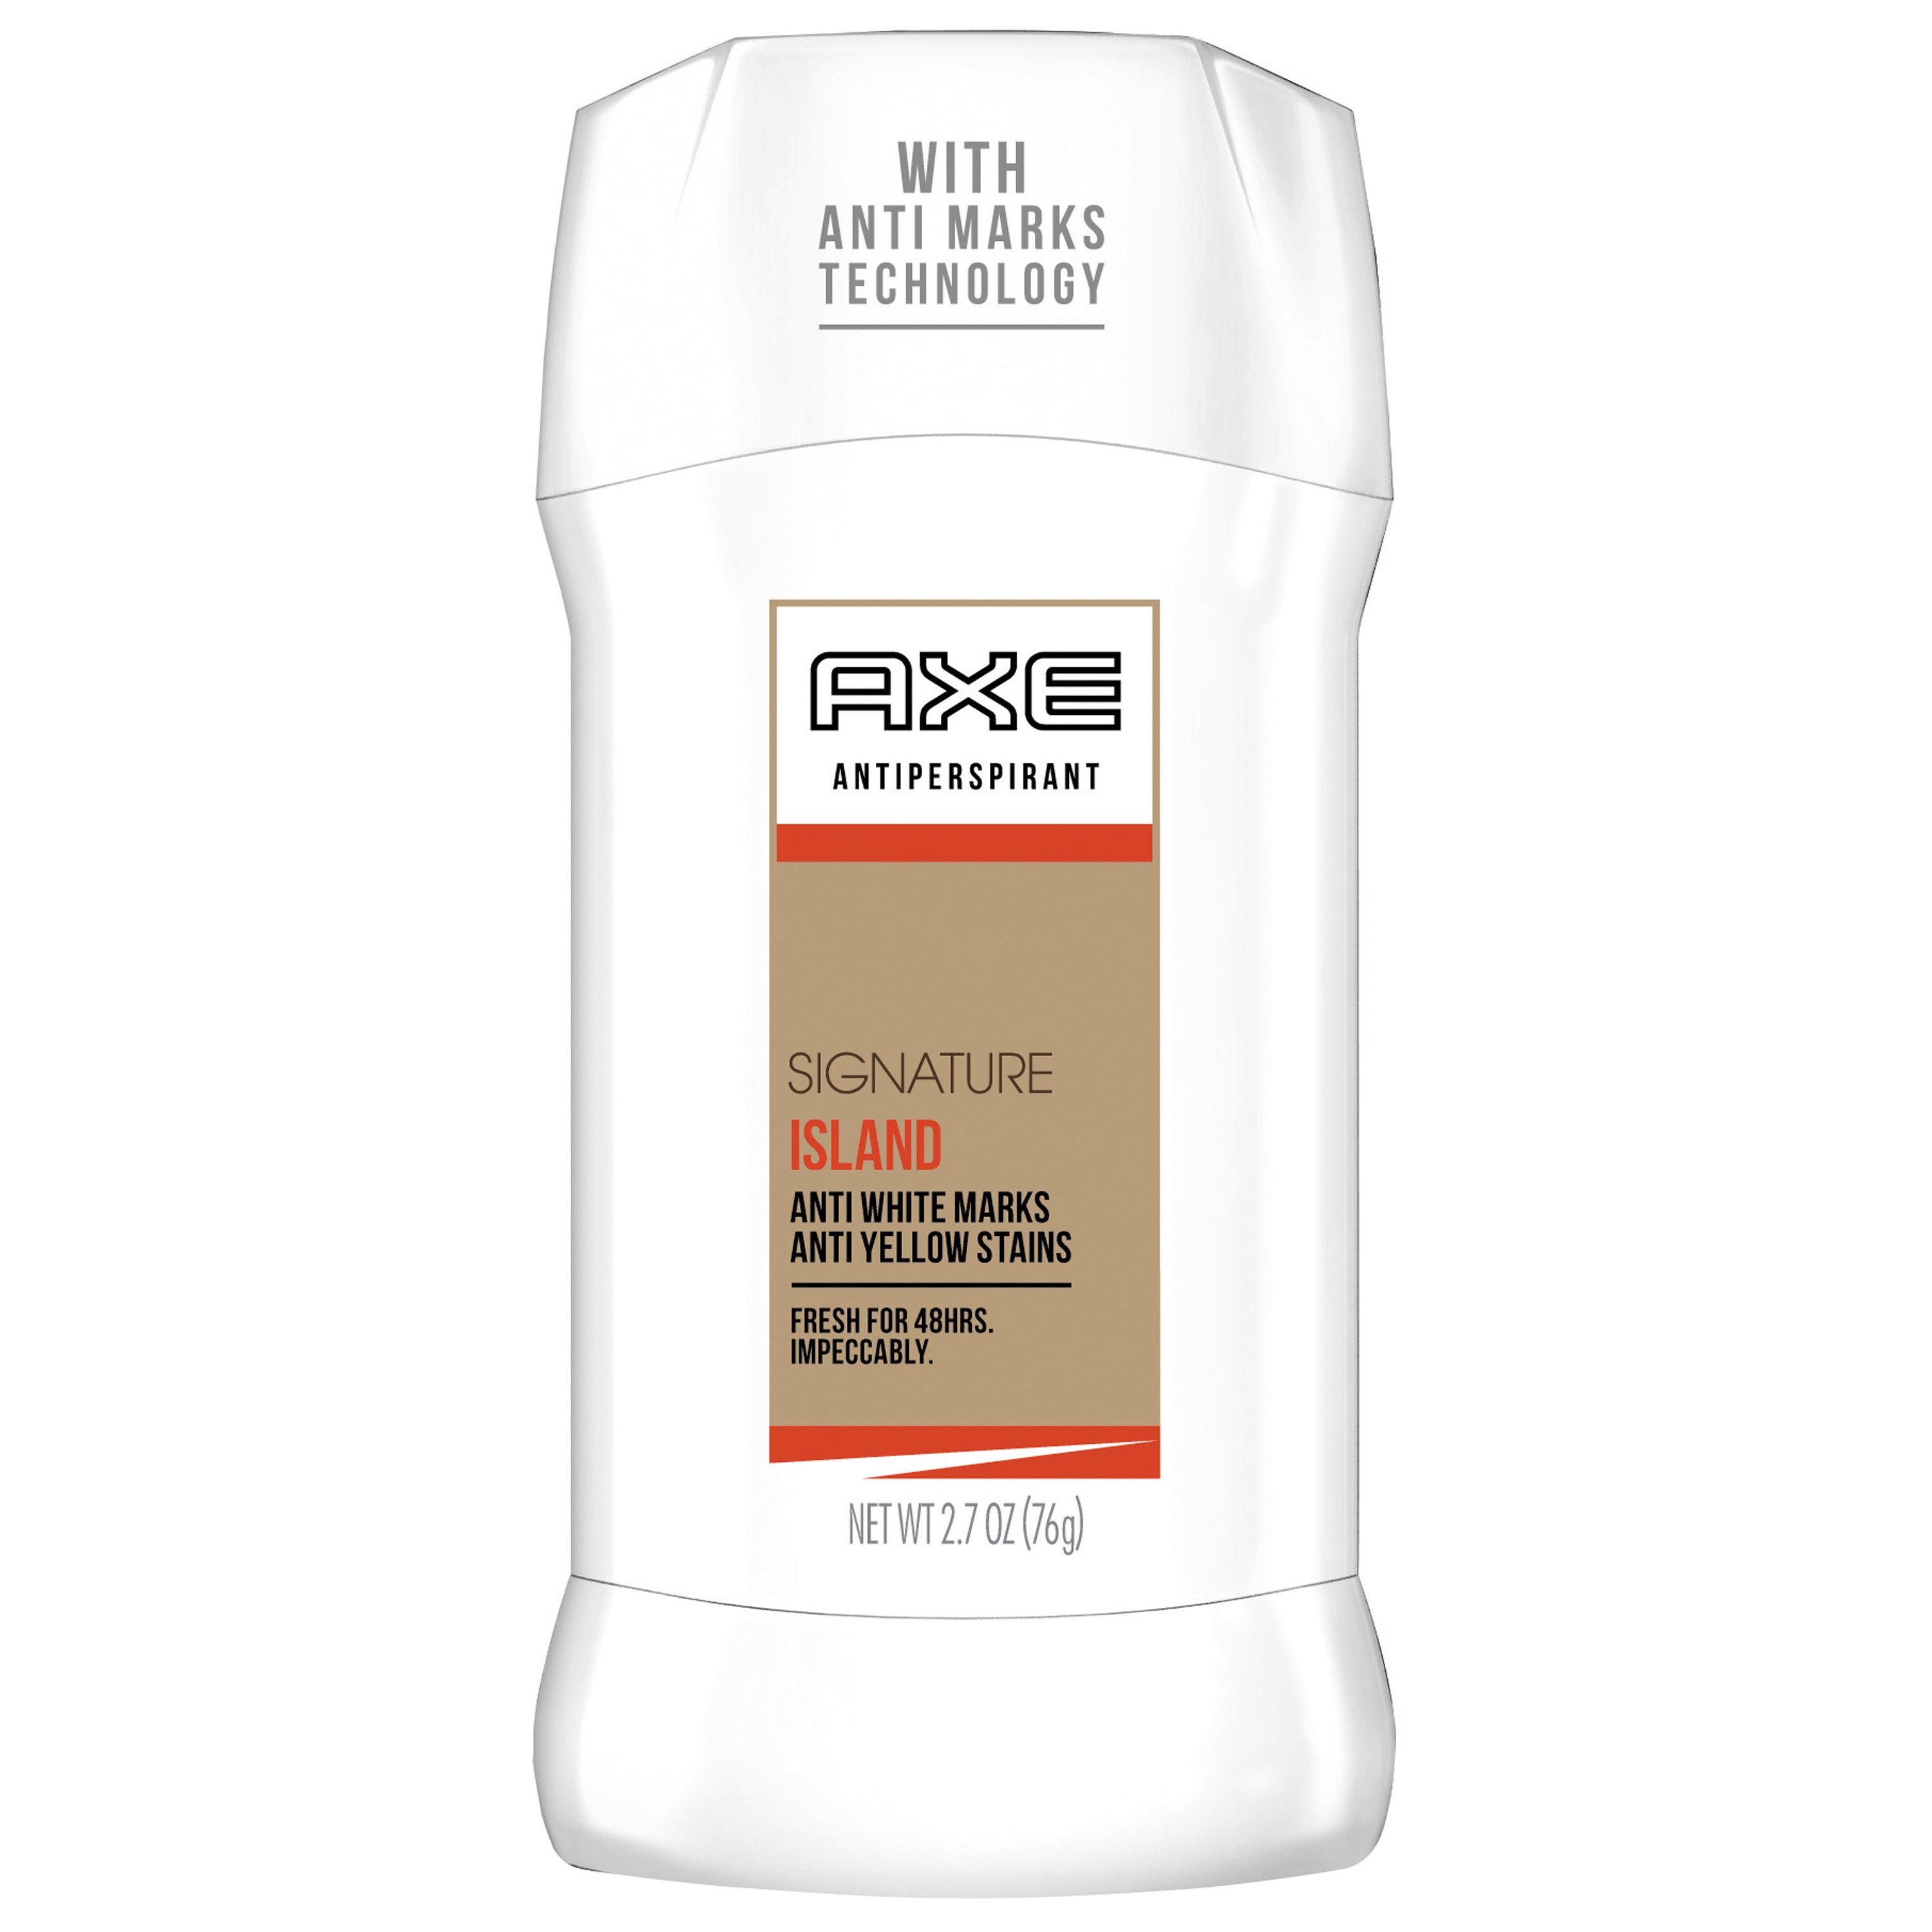 AXE White Label Antiperspirant Deodorant Stick for Men Signature Island - Bath & Skin Care H-E-B